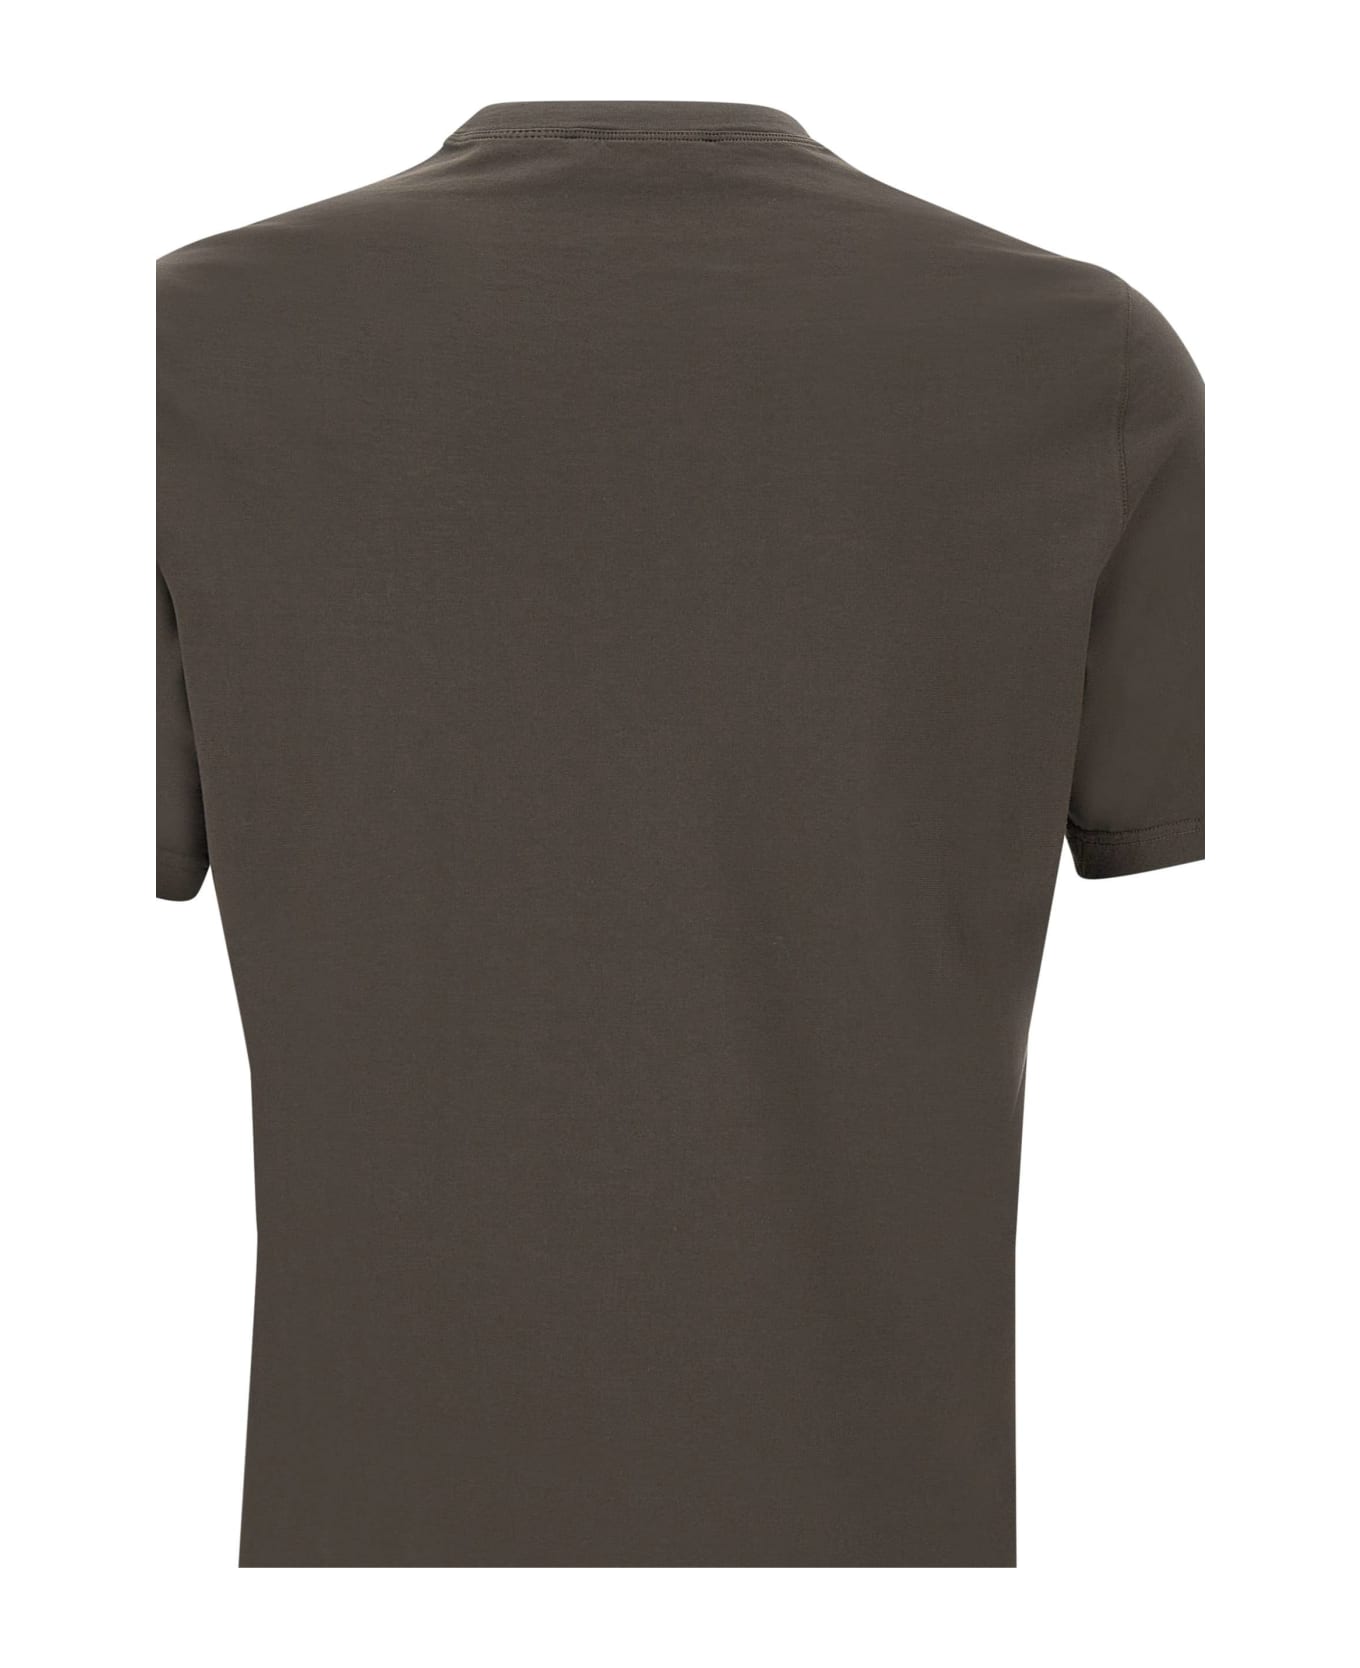 Filippo De Laurentiis Cotton Crepe T-shirt - BROWN